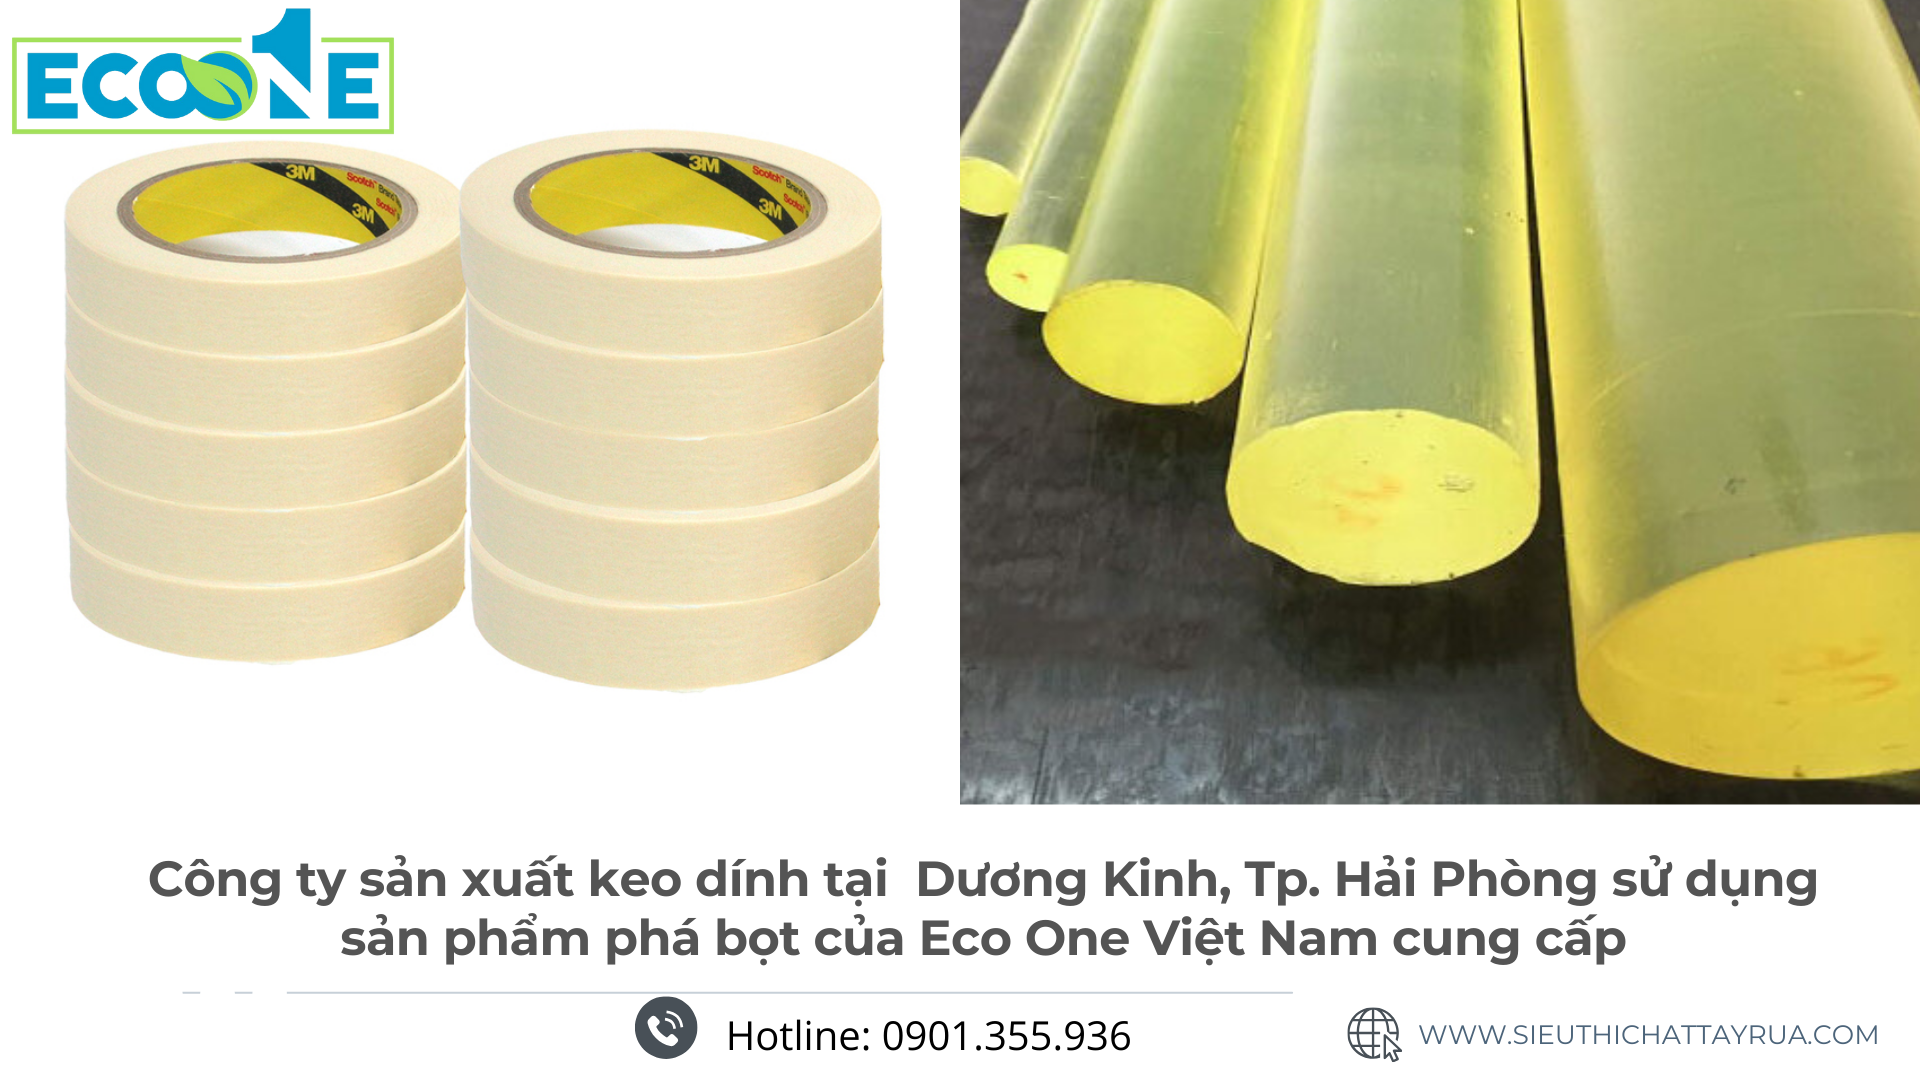 Công ty sản xuất keo dính tại Dương Kinh, Tp. Hải Phòng sử dụng sản phẩm phá bọt của Eco One Việt Nam cung cấp